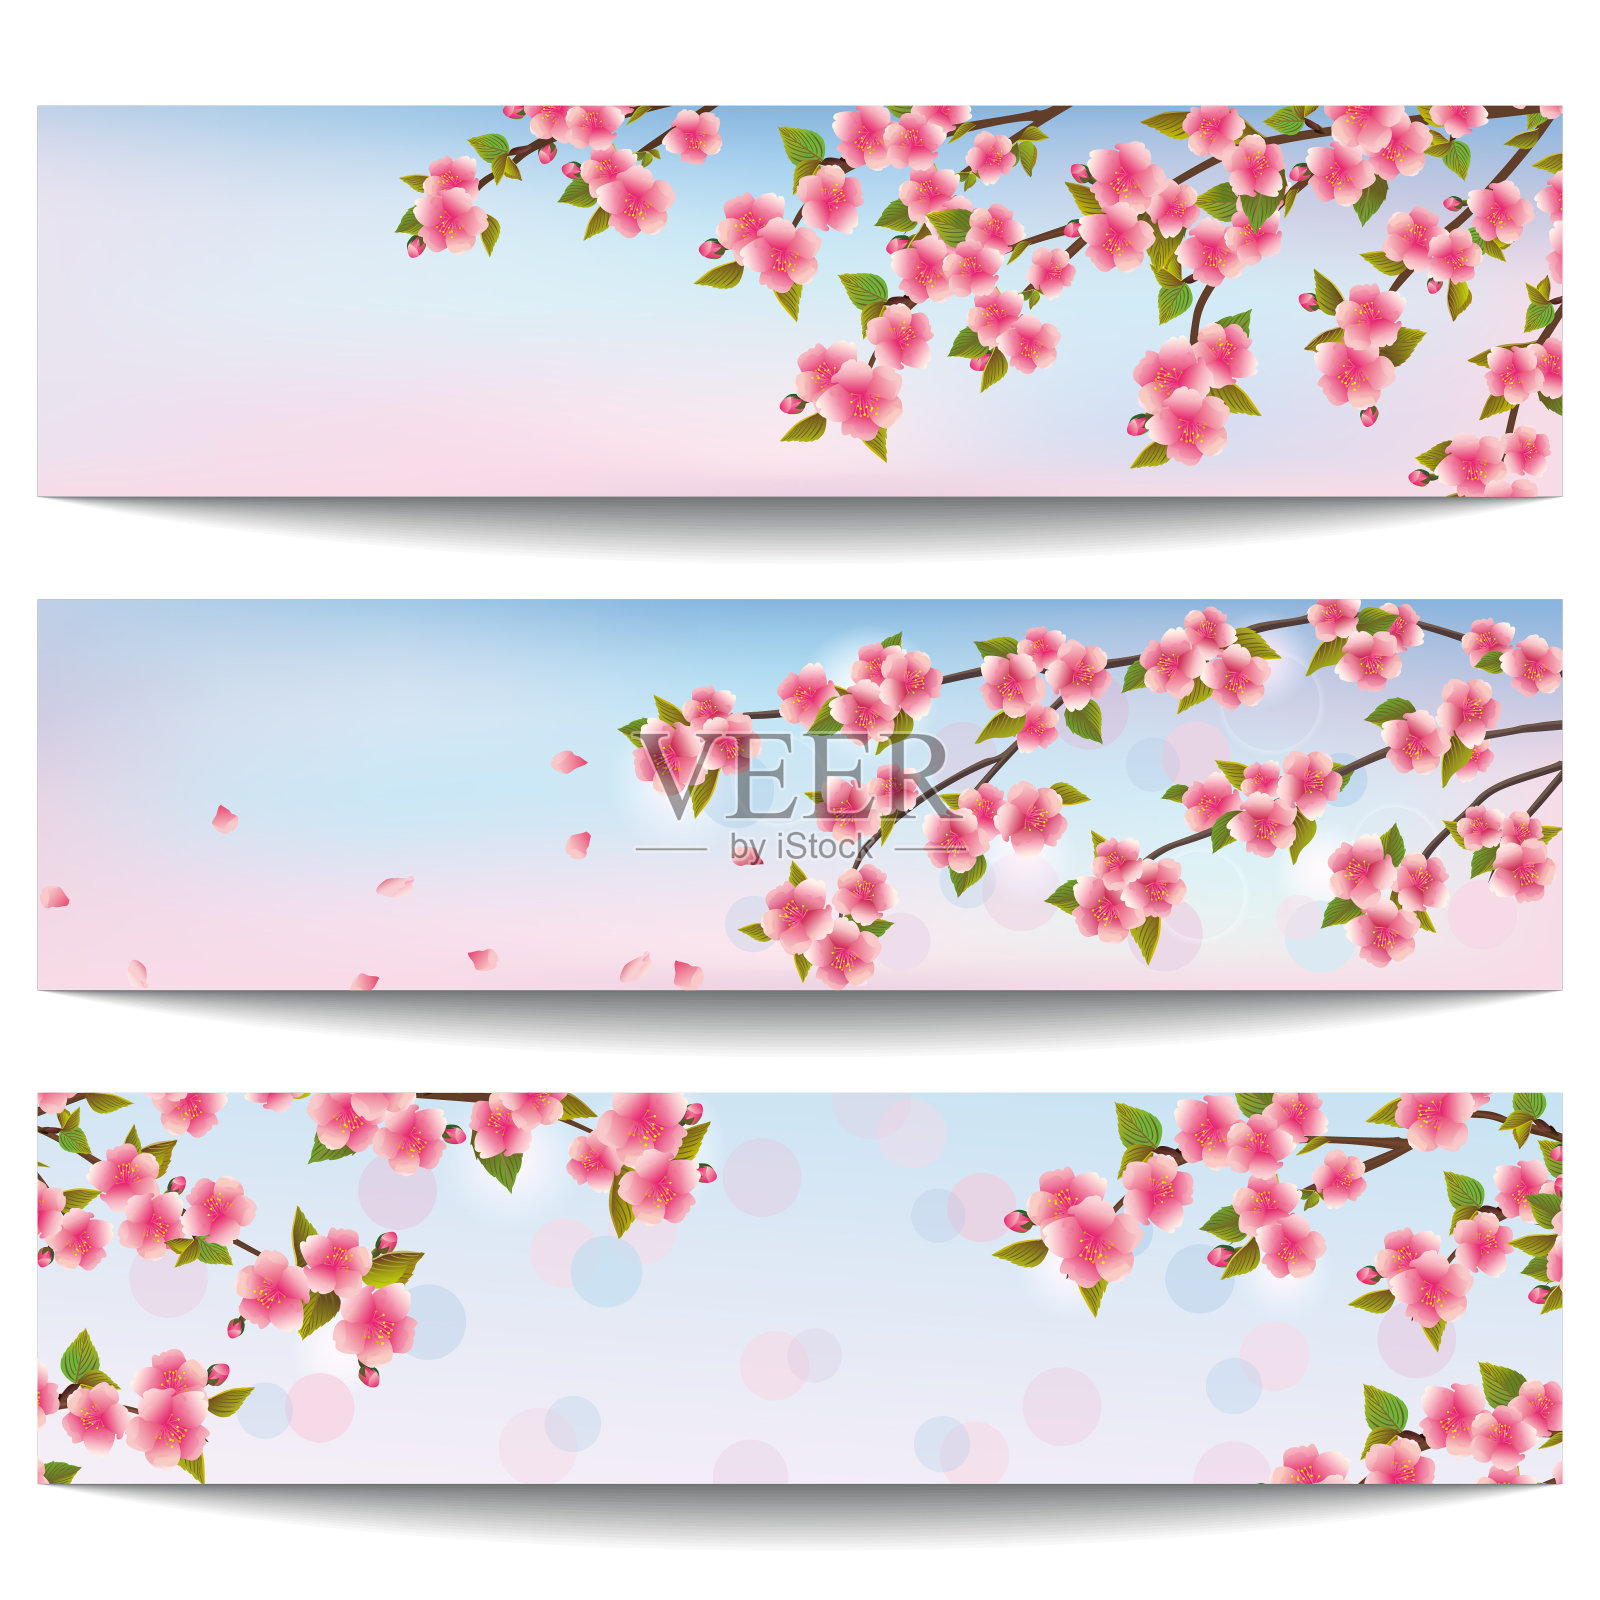 一套美丽的横幅与粉红色樱花树设计模板素材